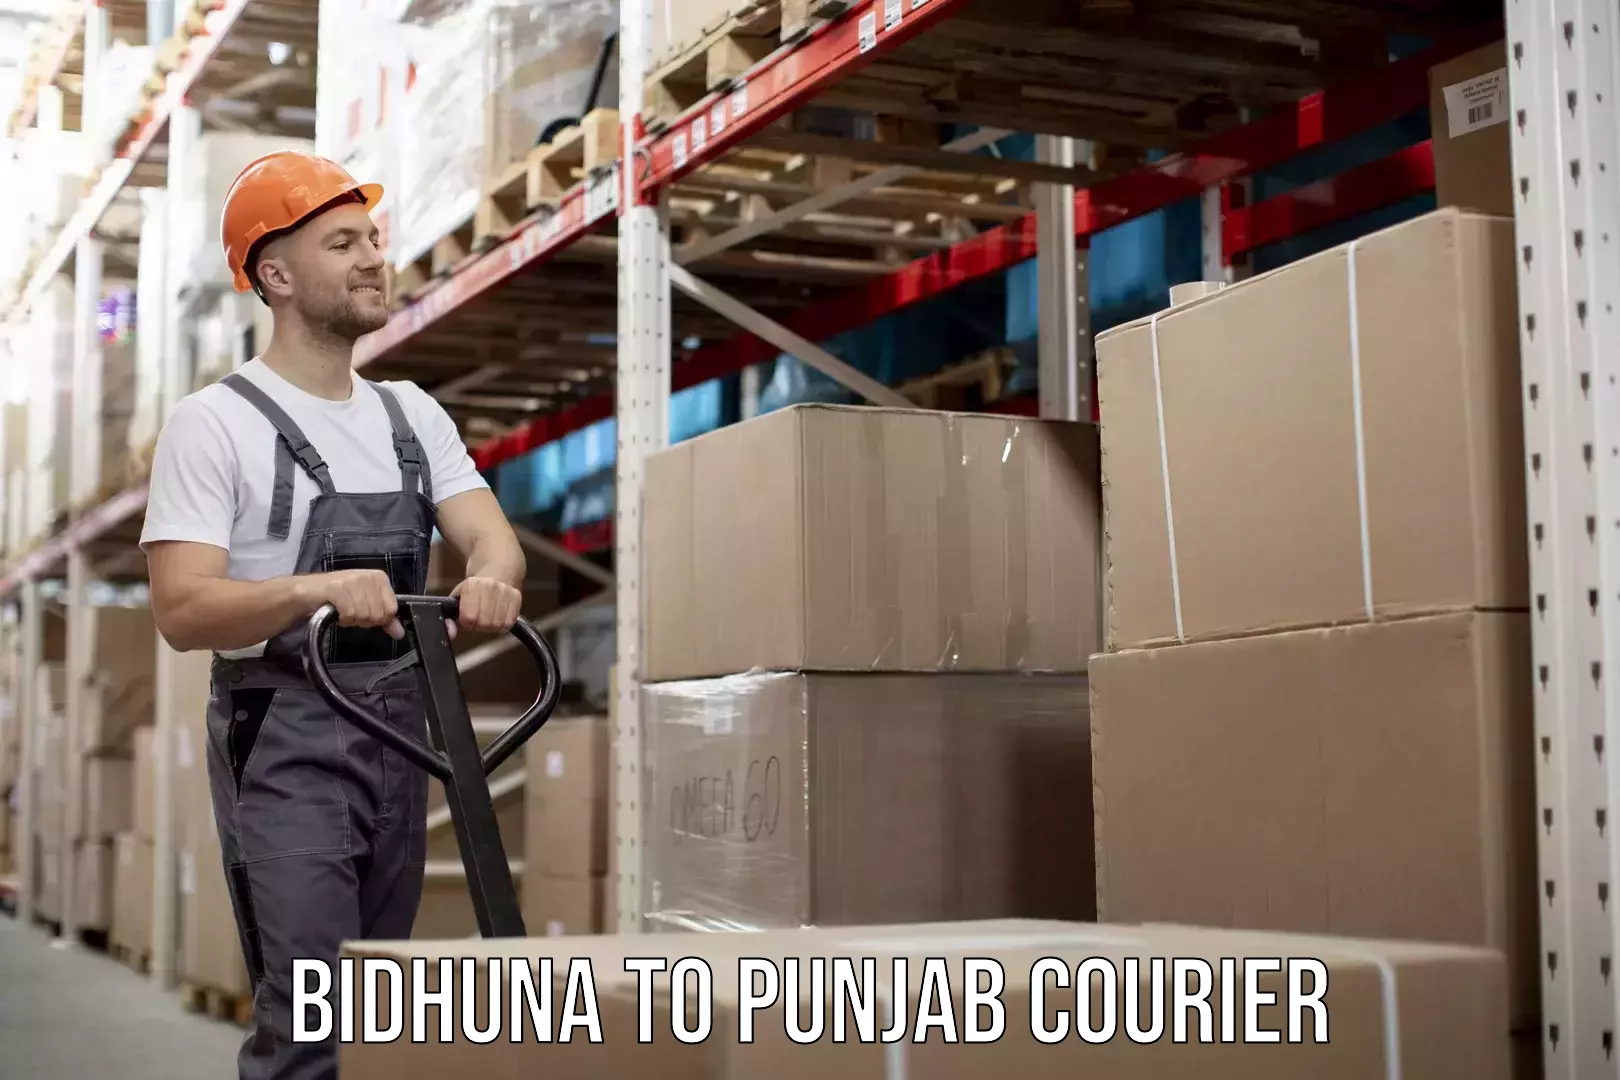 Express package handling Bidhuna to Punjab